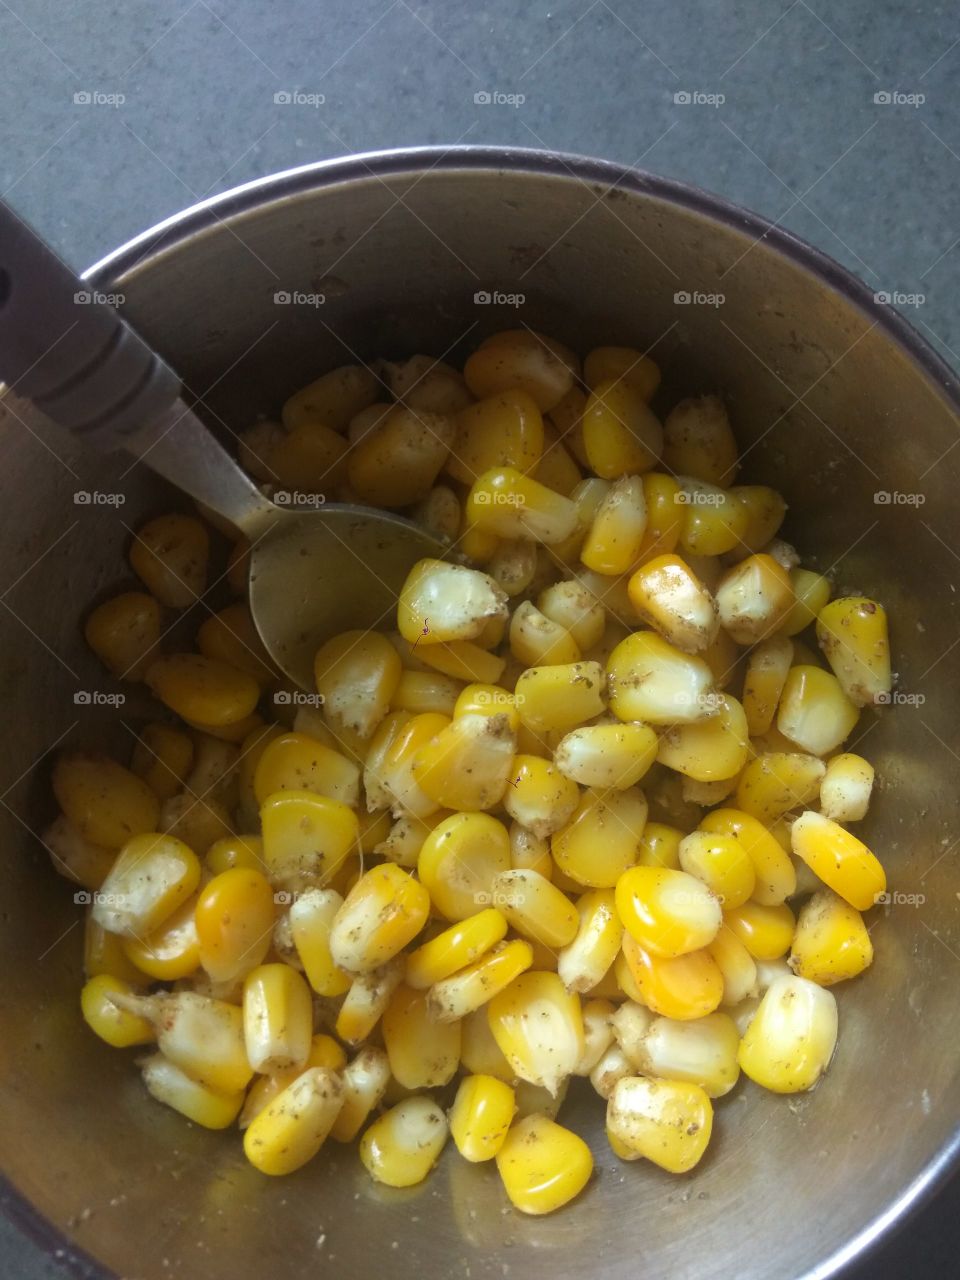 corn 
yellow 
spoon 
masala